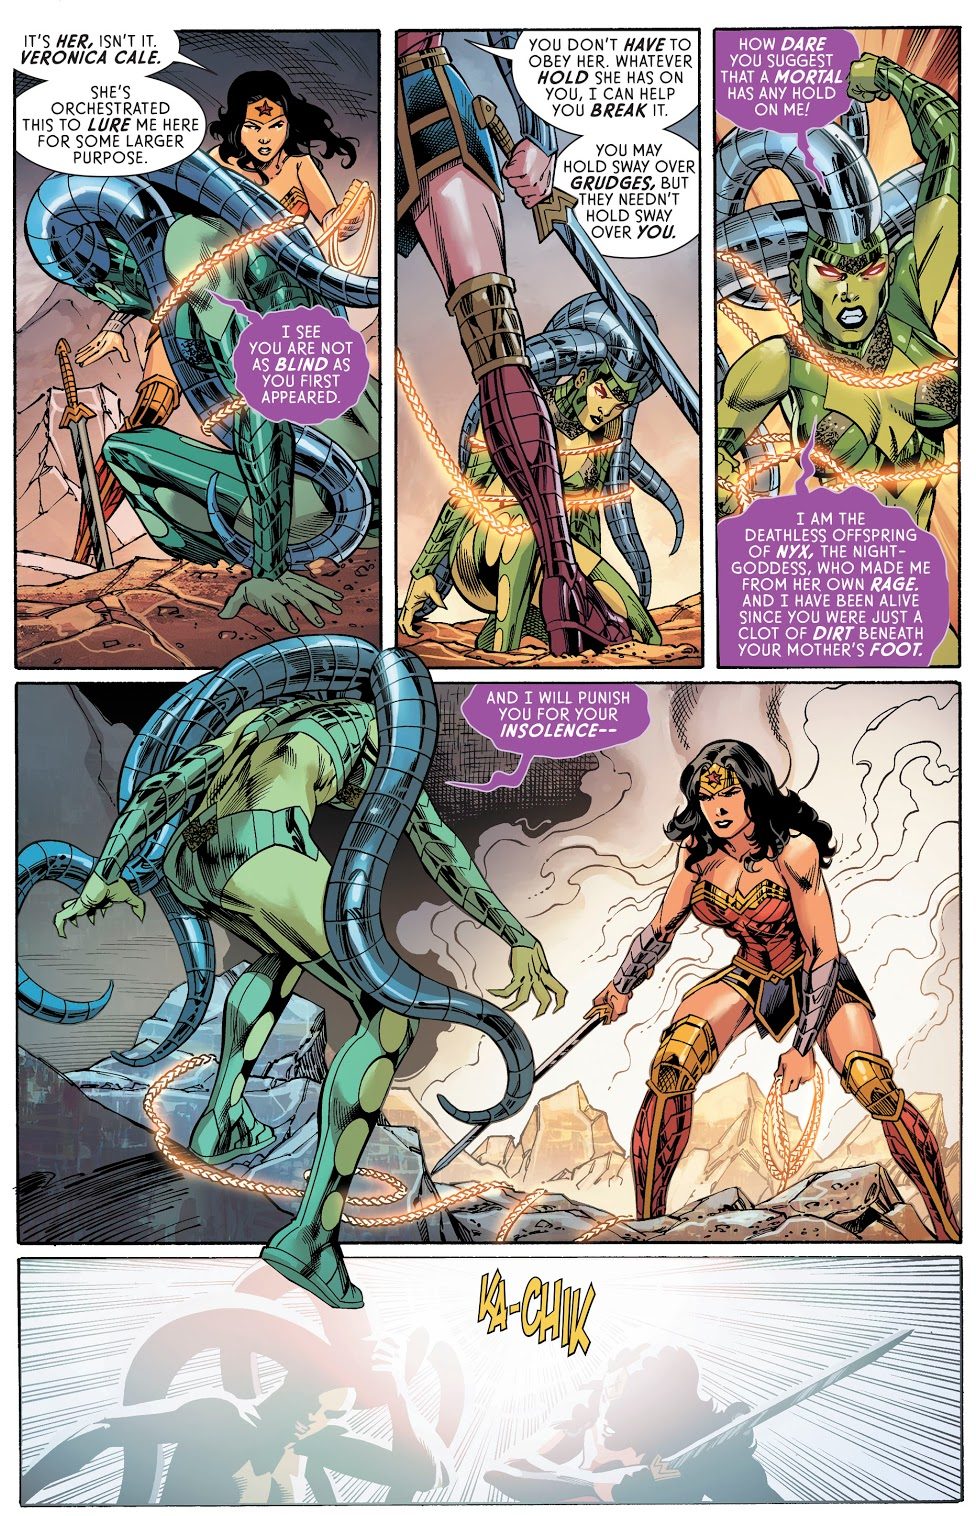 Wonder Woman VS Nemesis (Rebirth) 